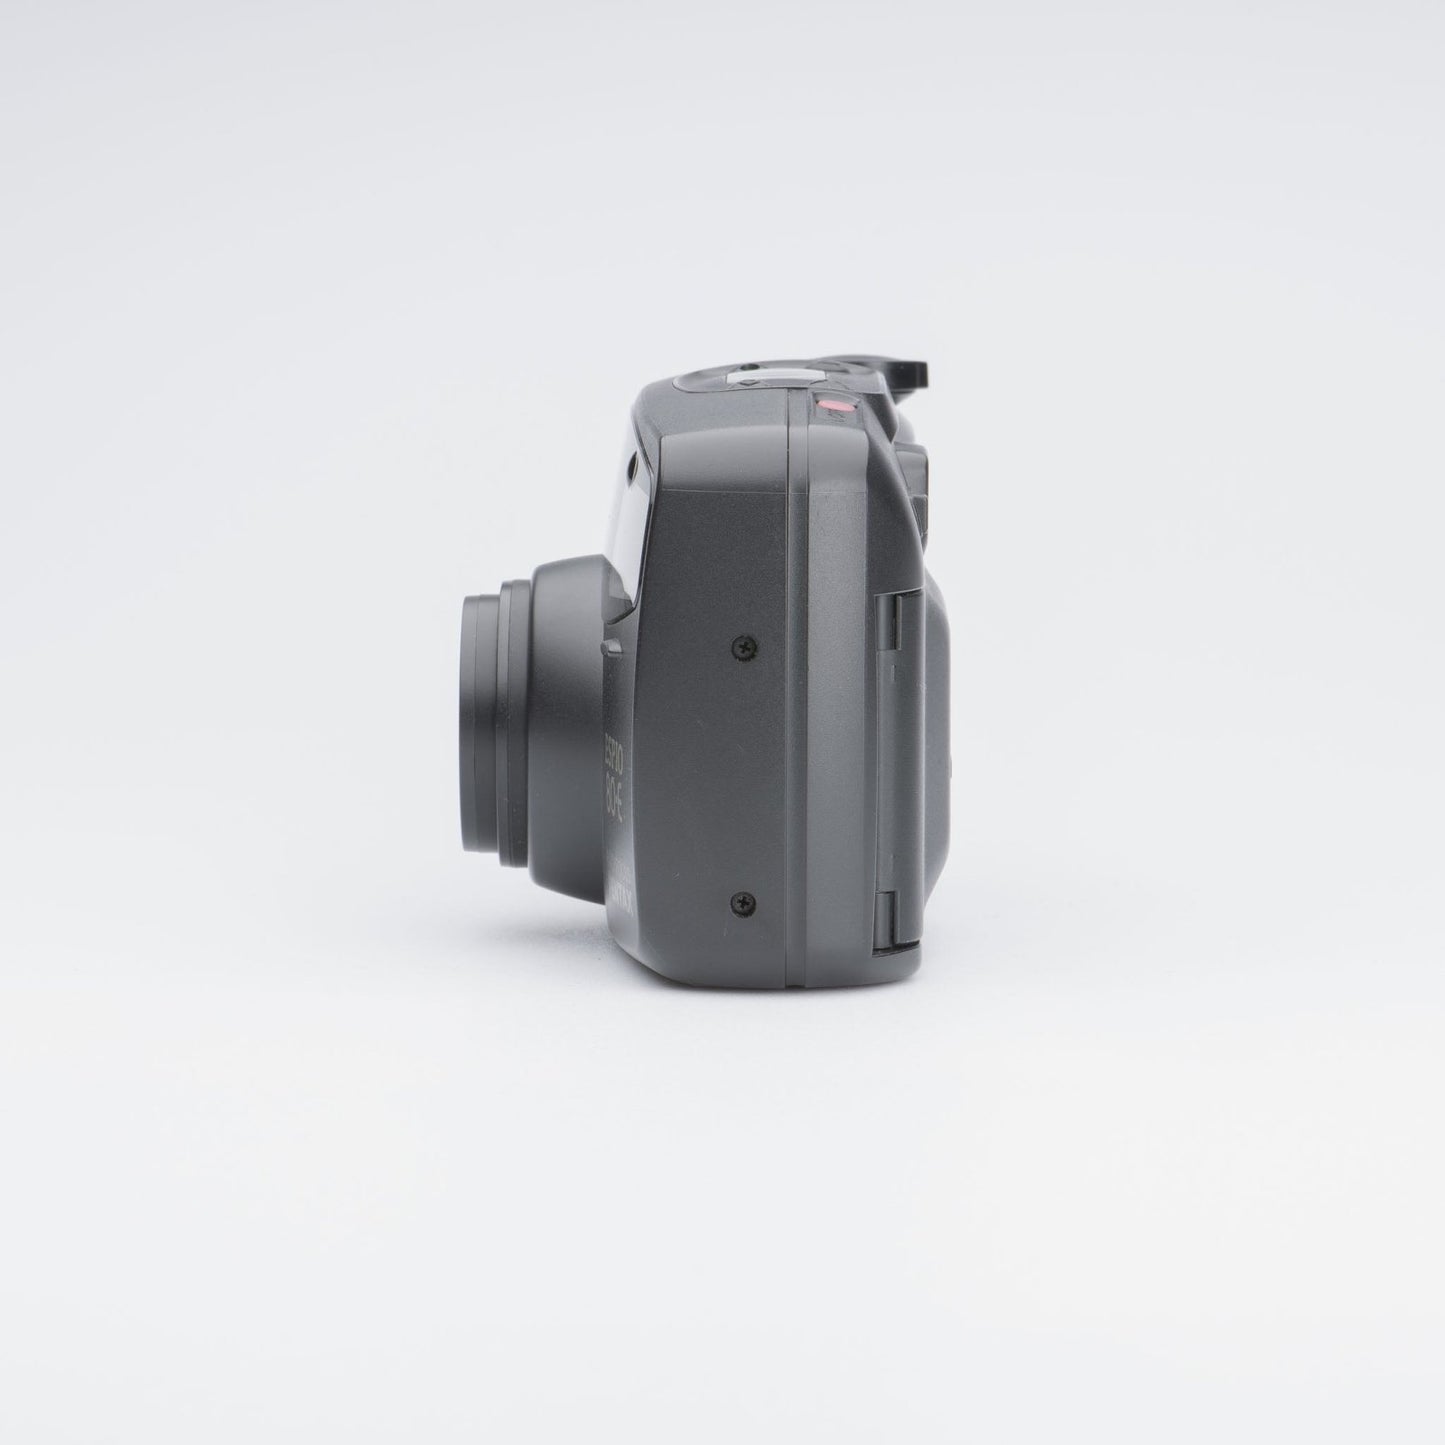 Pentax Espio 80-E 35mm Film Camera - Camera Kangaroo